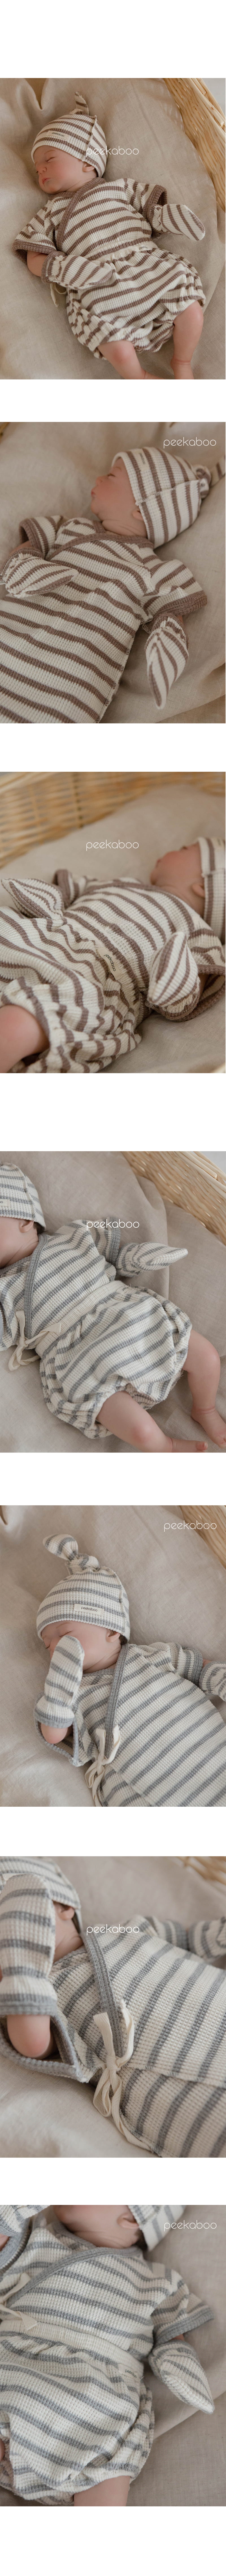 Peekaboo - Korean Baby Fashion - #babygirlfashion - Nune Benet Top Bottom Hat Hand Warmer Set - 4